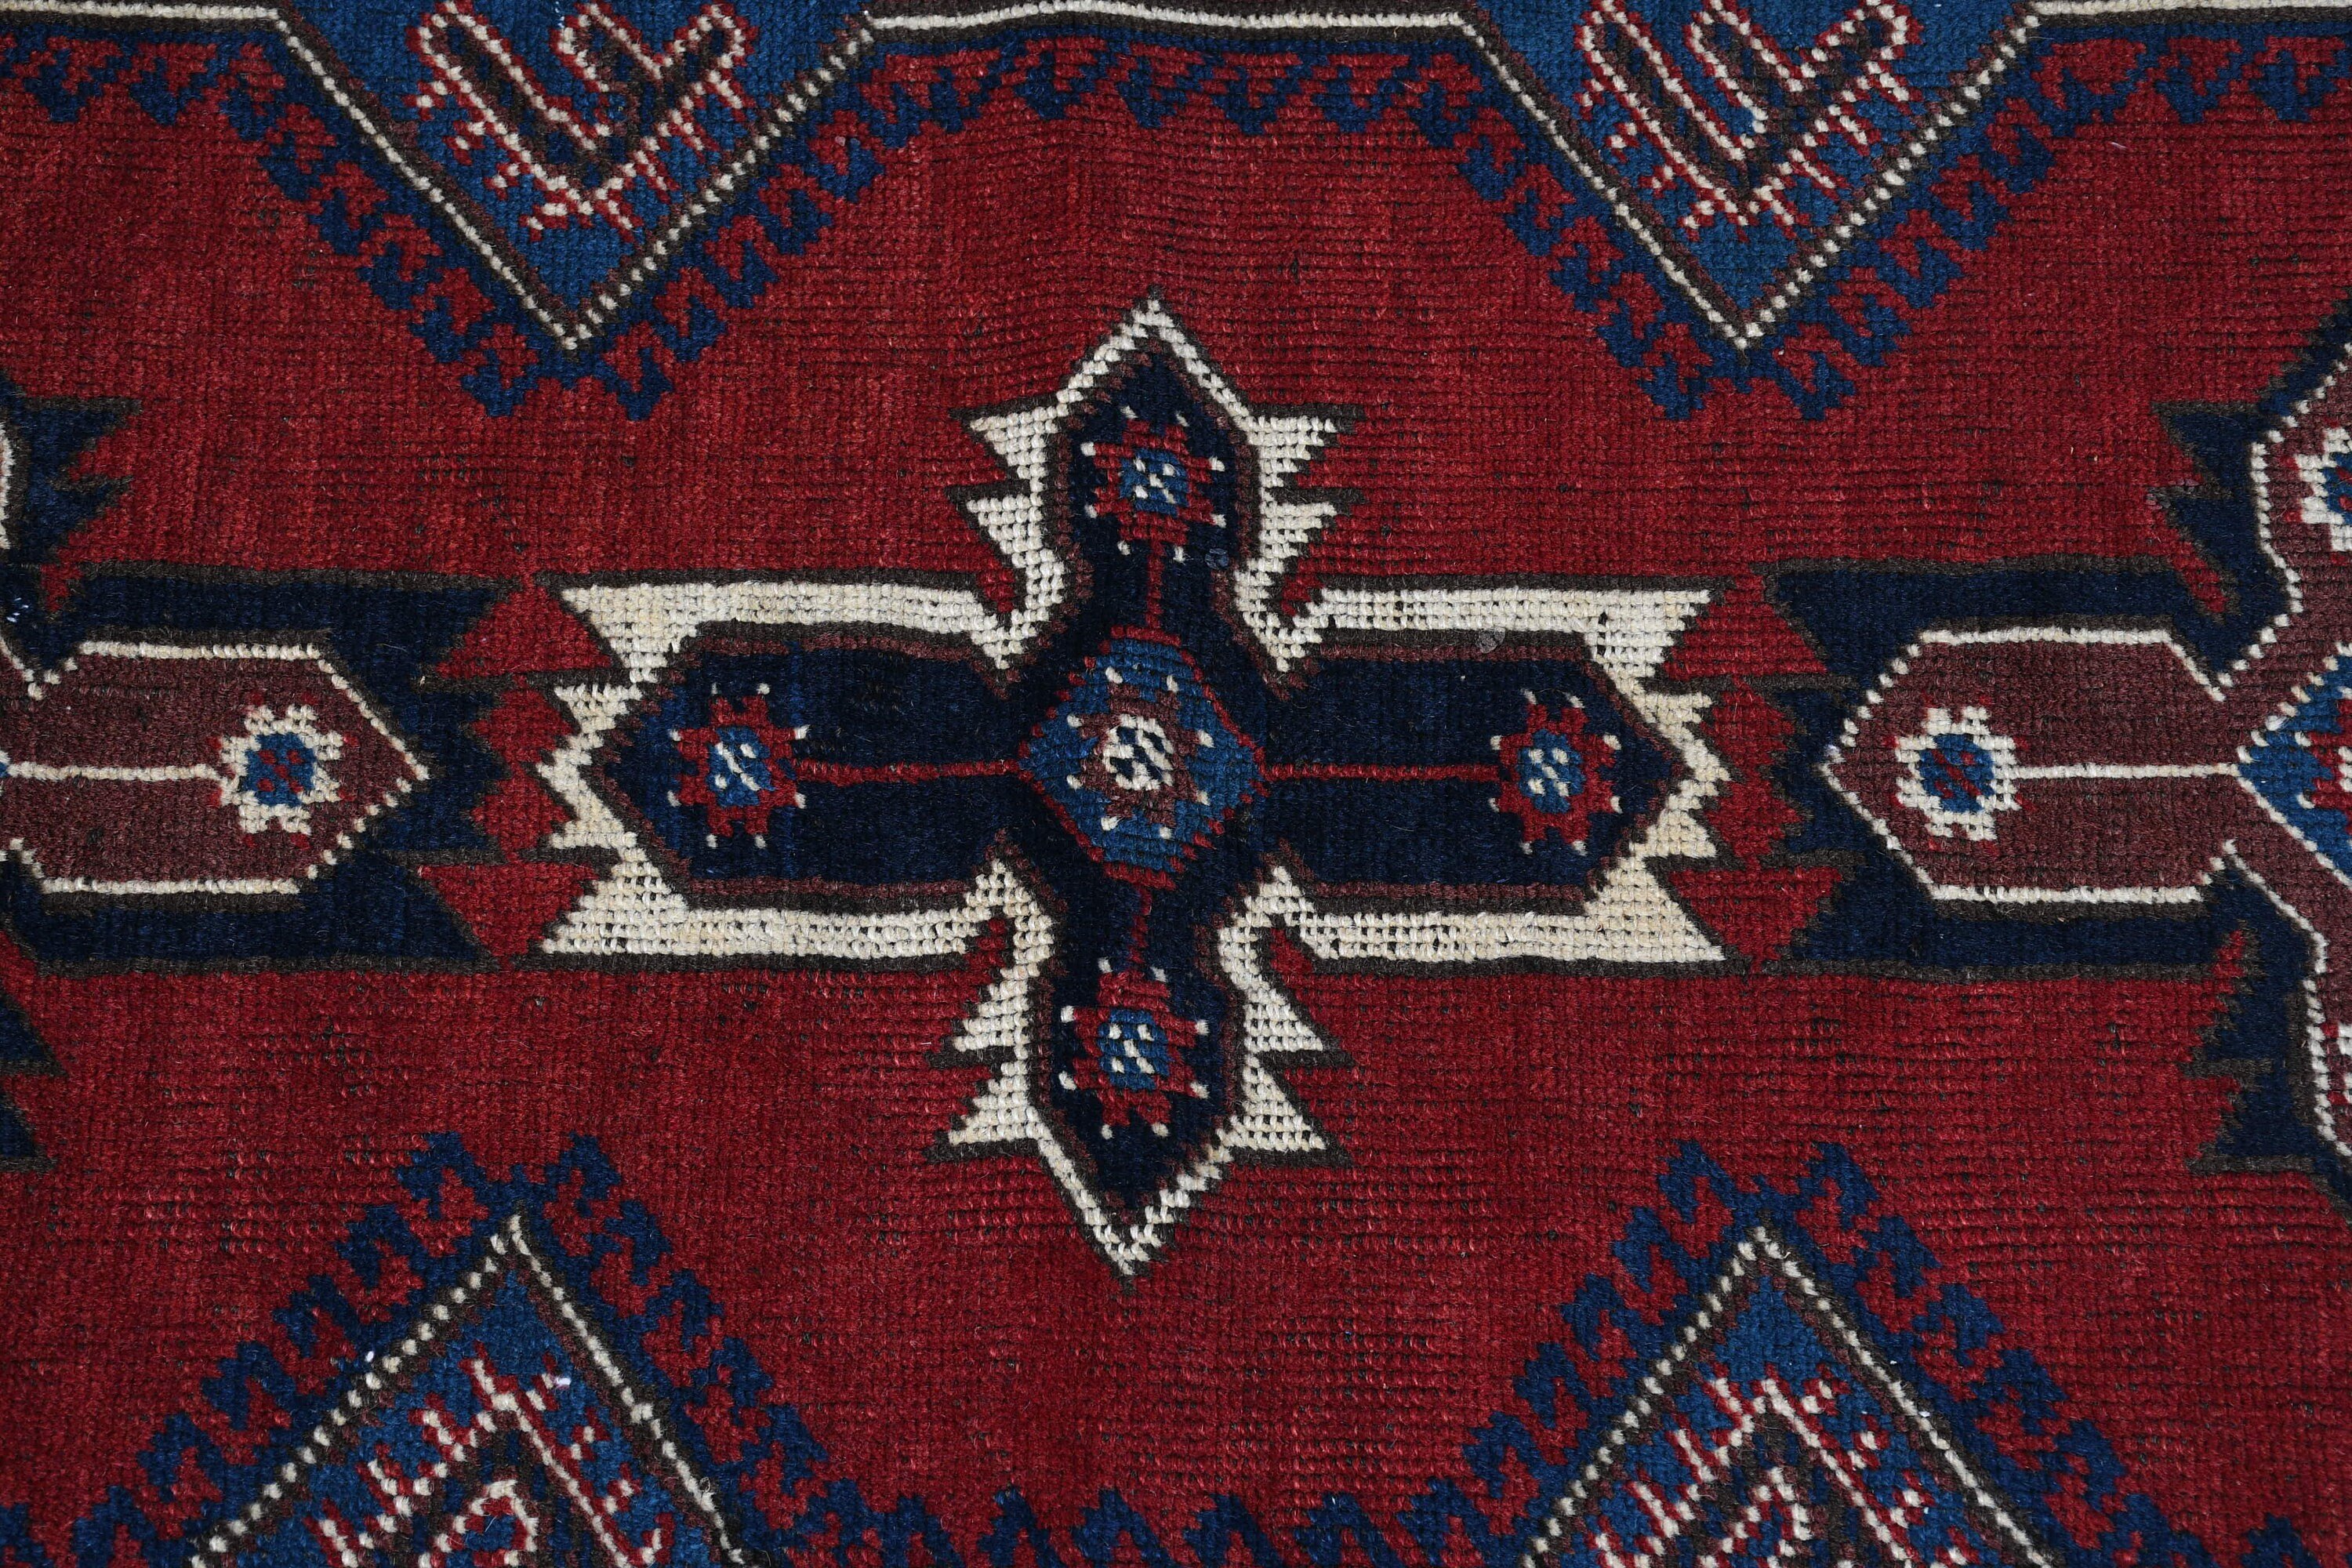 Blue Floor Rugs, Vintage Rugs, Bedroom Rug, Aesthetic Rug, 4.1x6.5 ft Area Rugs, Wool Rug, Kitchen Rug, Turkish Rug, Rugs for Floor